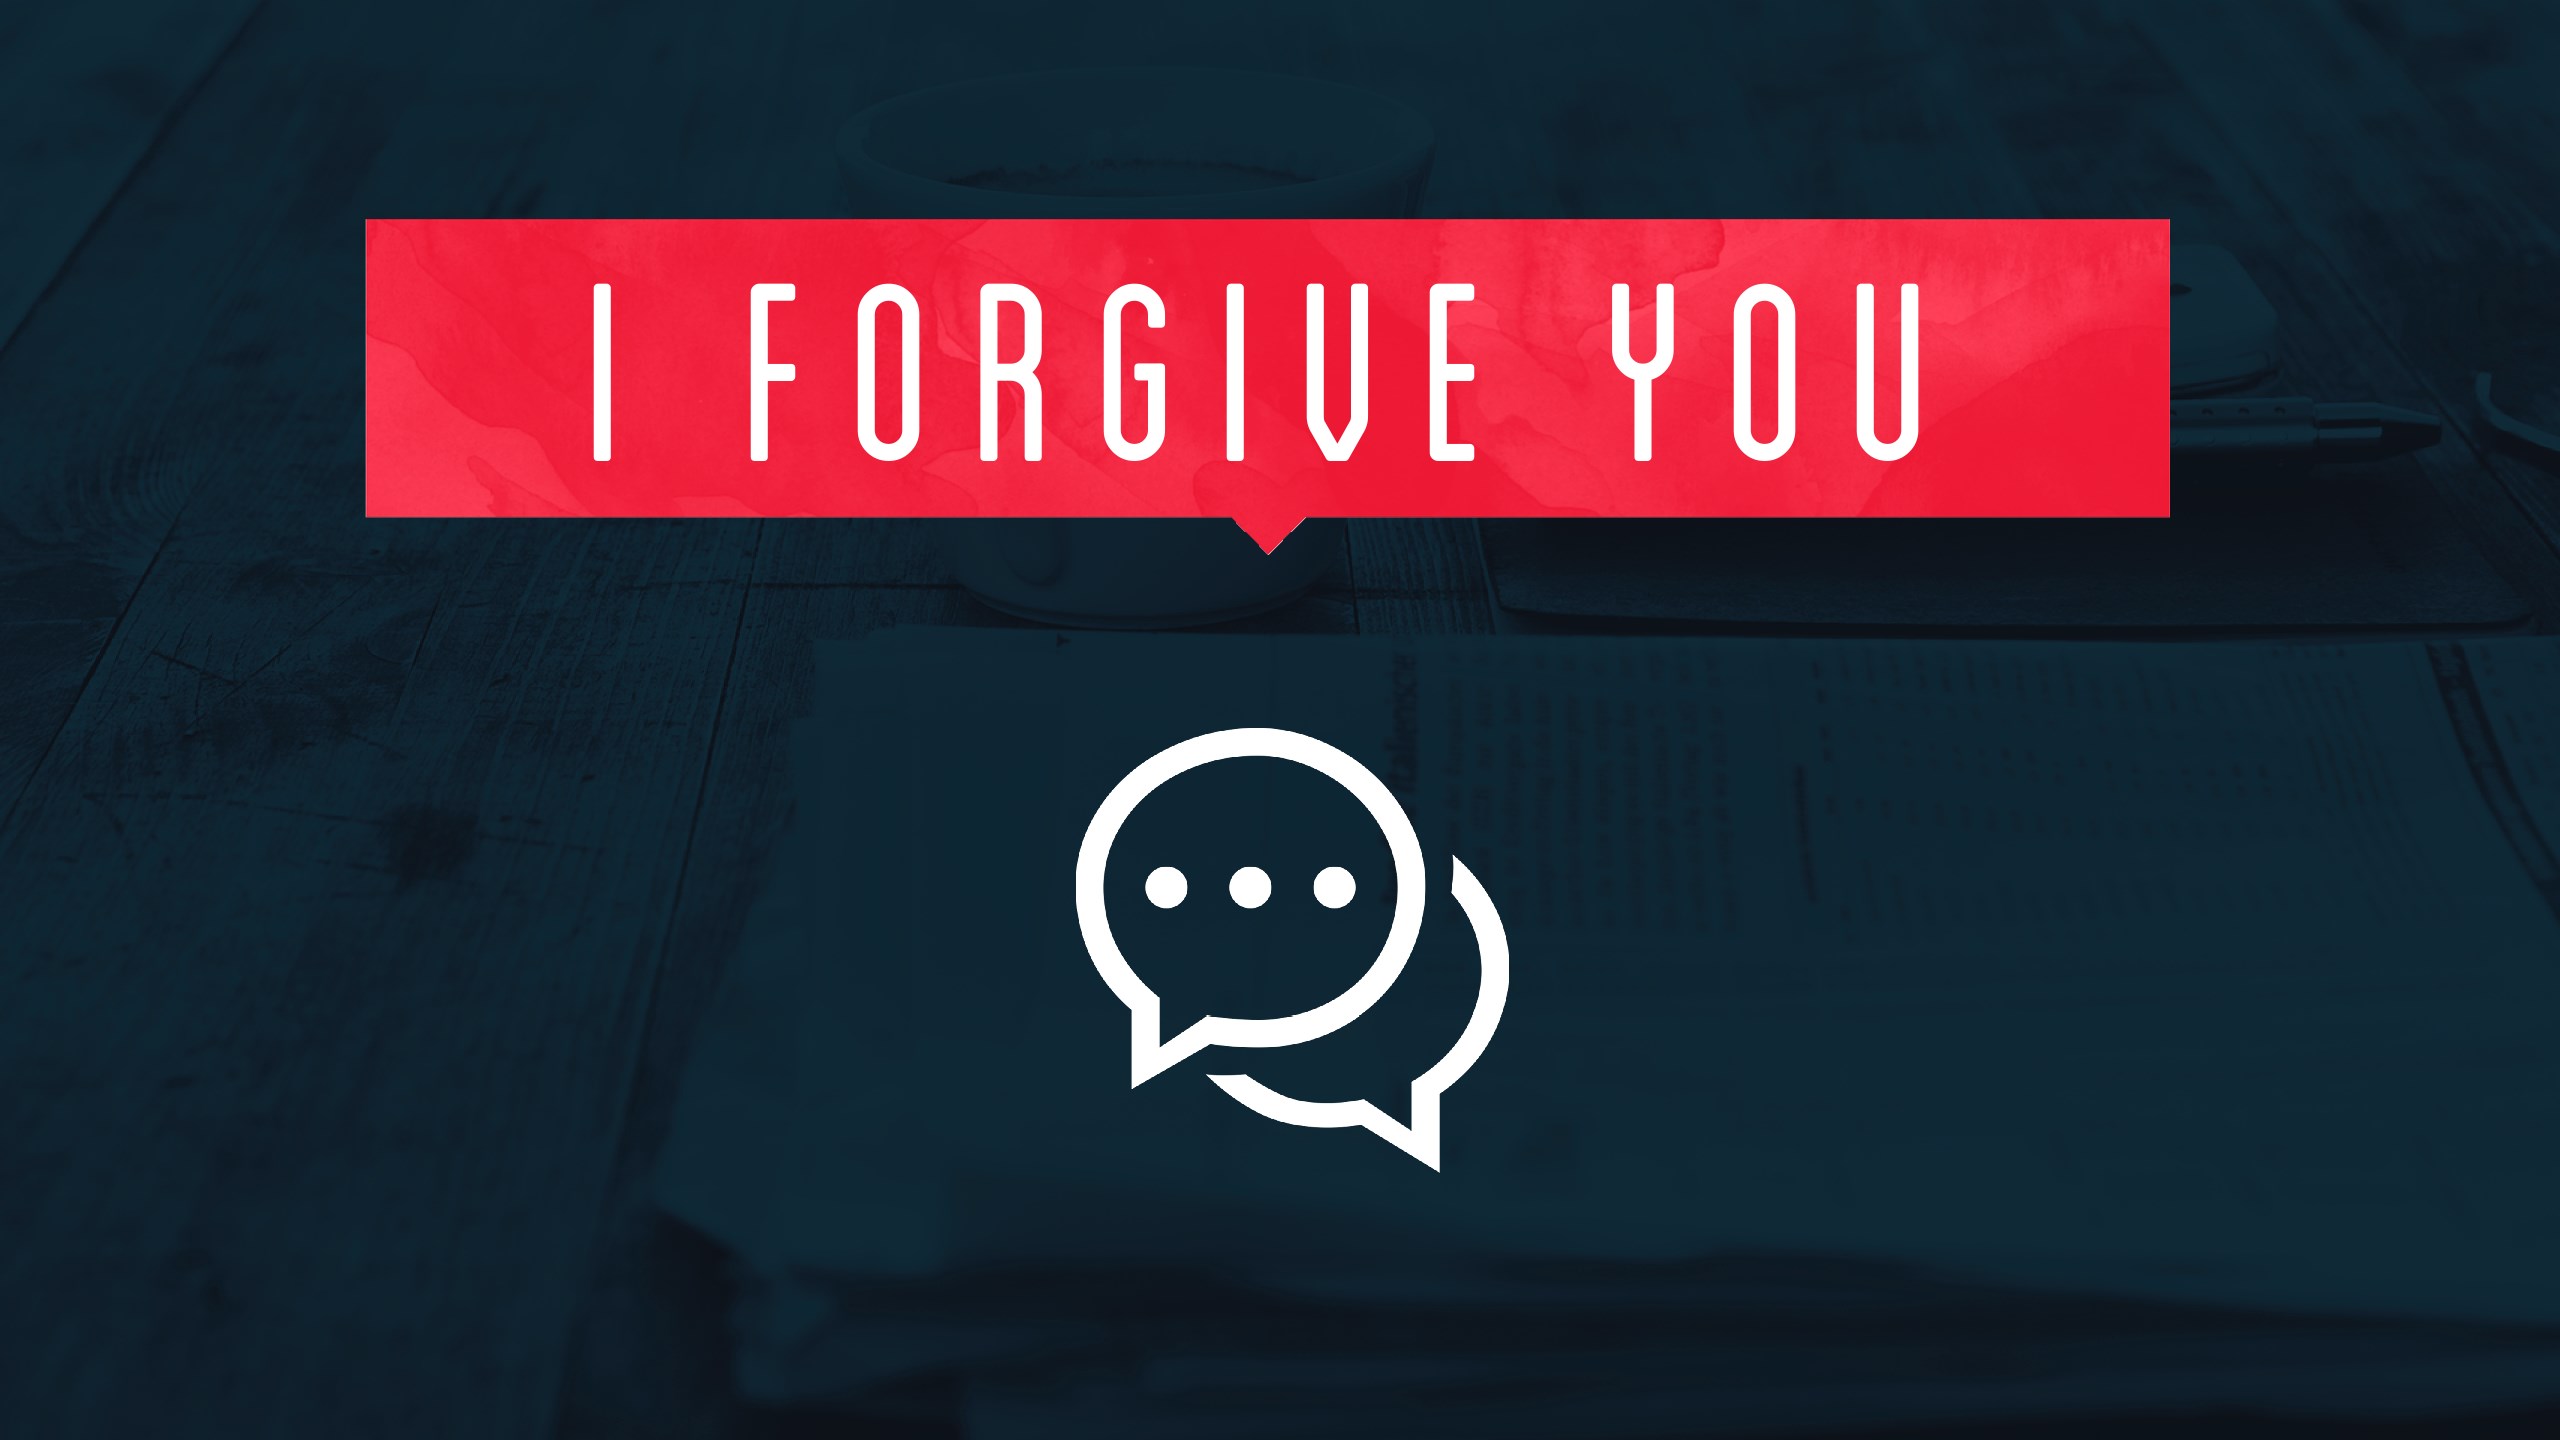 I Forgive You - Confession